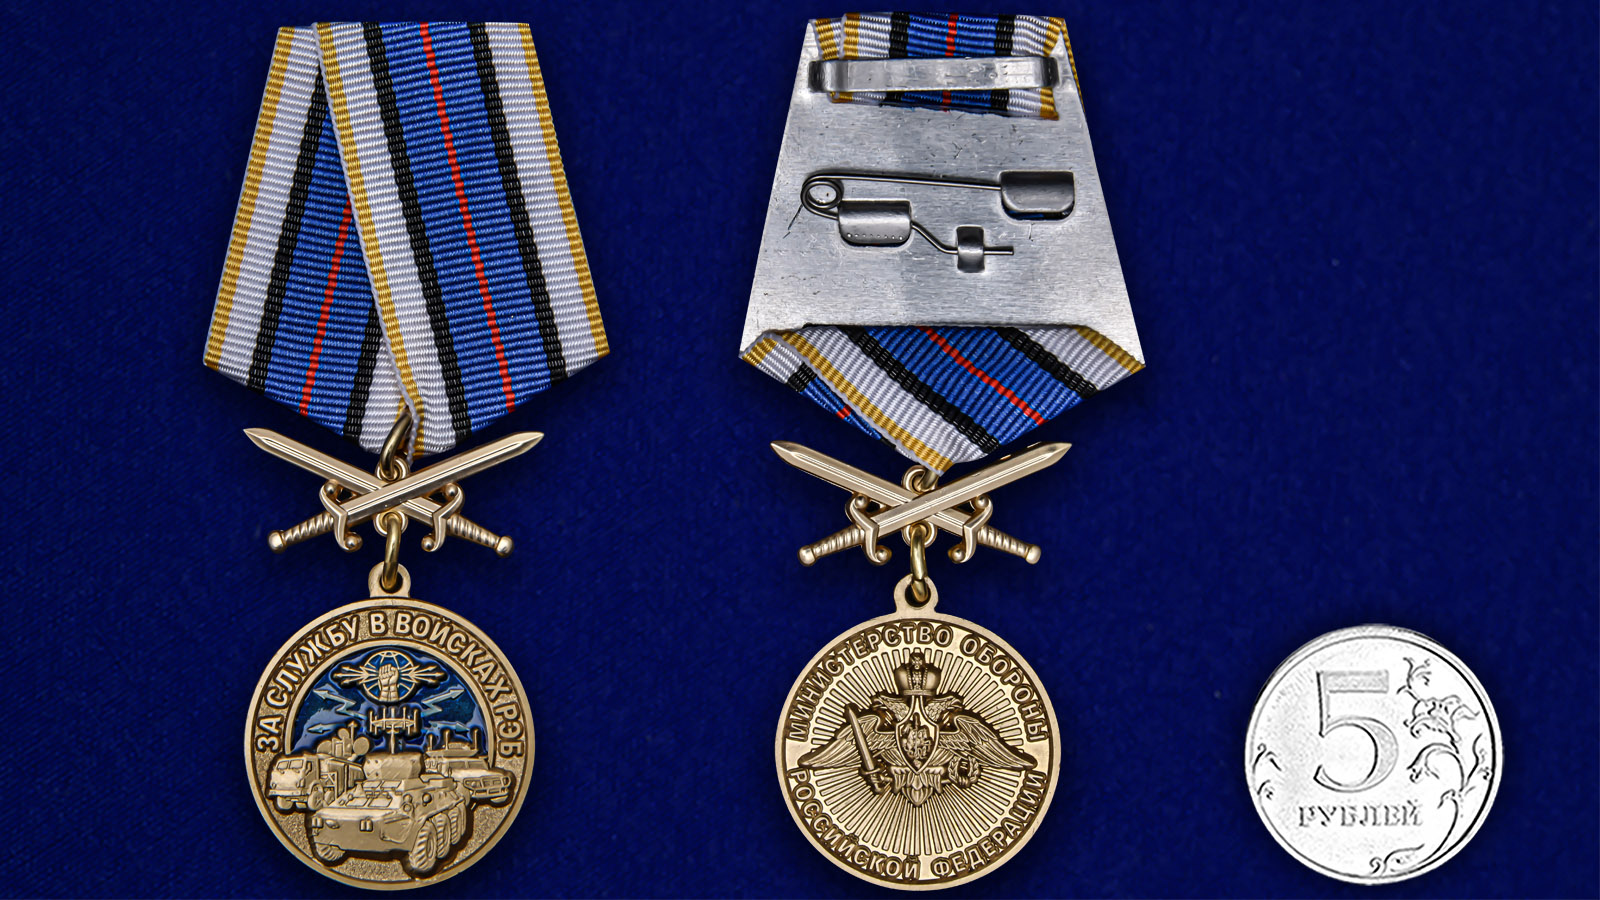 Памятная медаль "За службу в войсках РЭБ" 